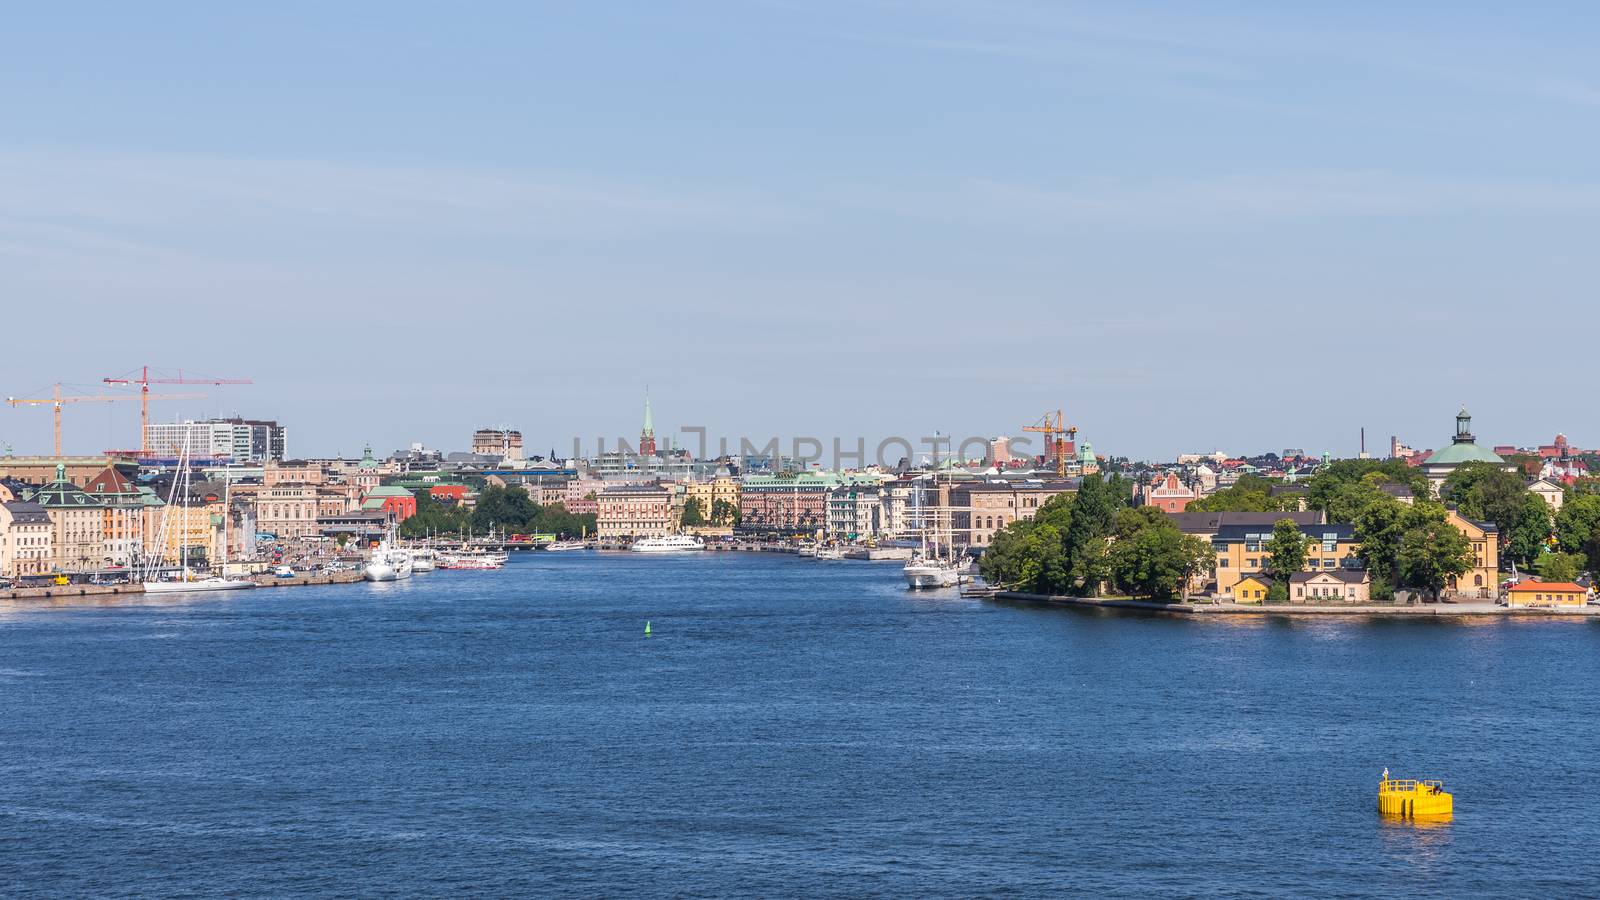 Cityscape with the Skeppsholmen islet by pawel_szczepanski